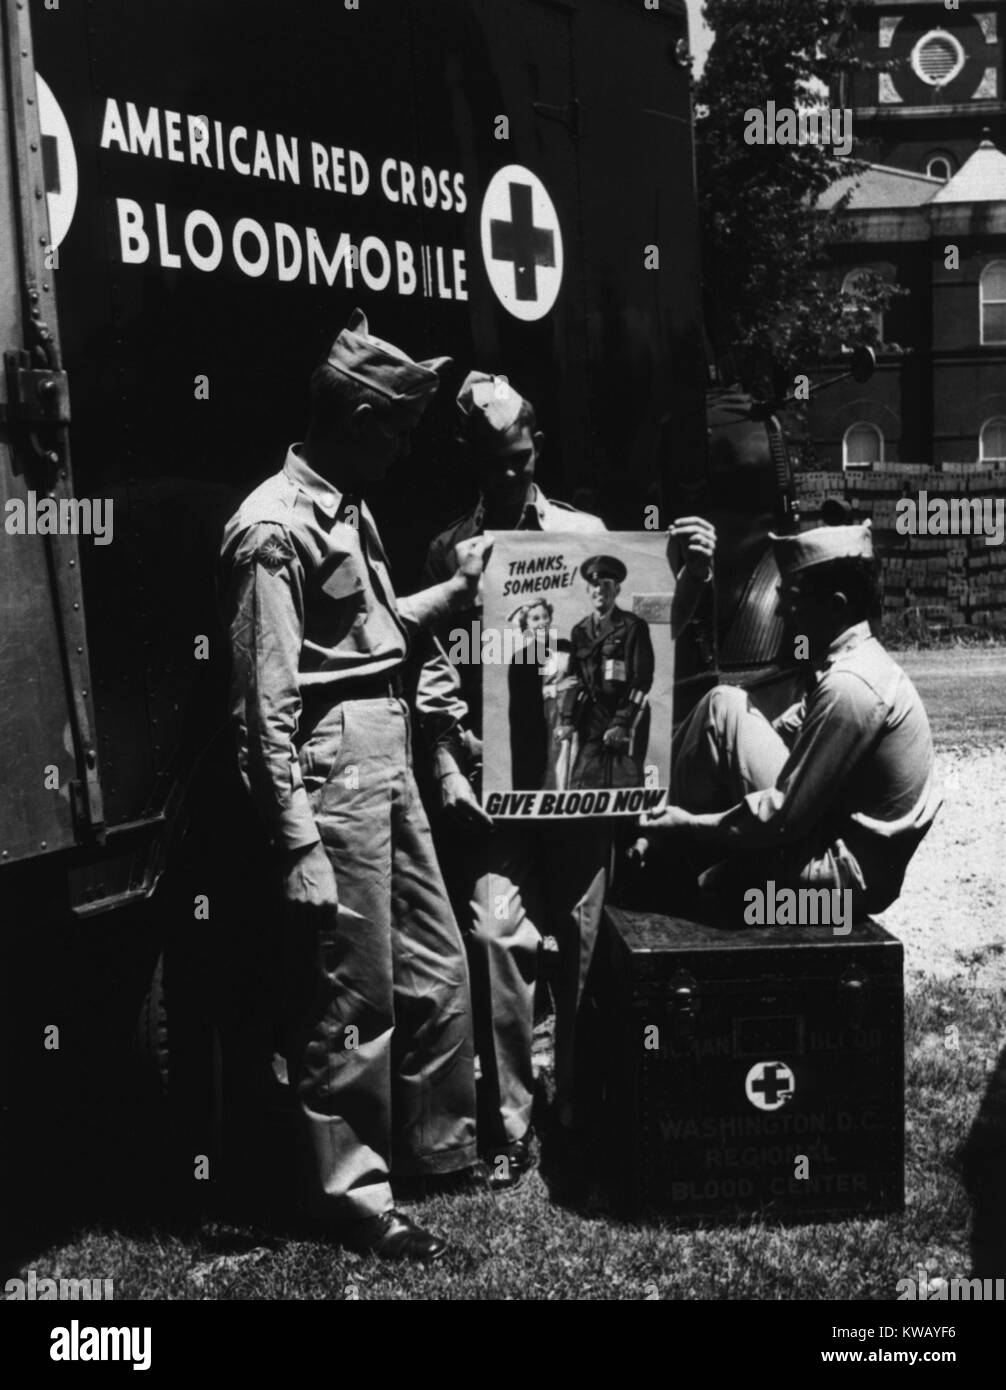 Travailleurs en face de la Croix Rouge américaine collectemobile holding signs que dire : Merci quelqu'un, donner du sang maintenant, United States, 1953. La permission de la National Library of Medicine. Banque D'Images